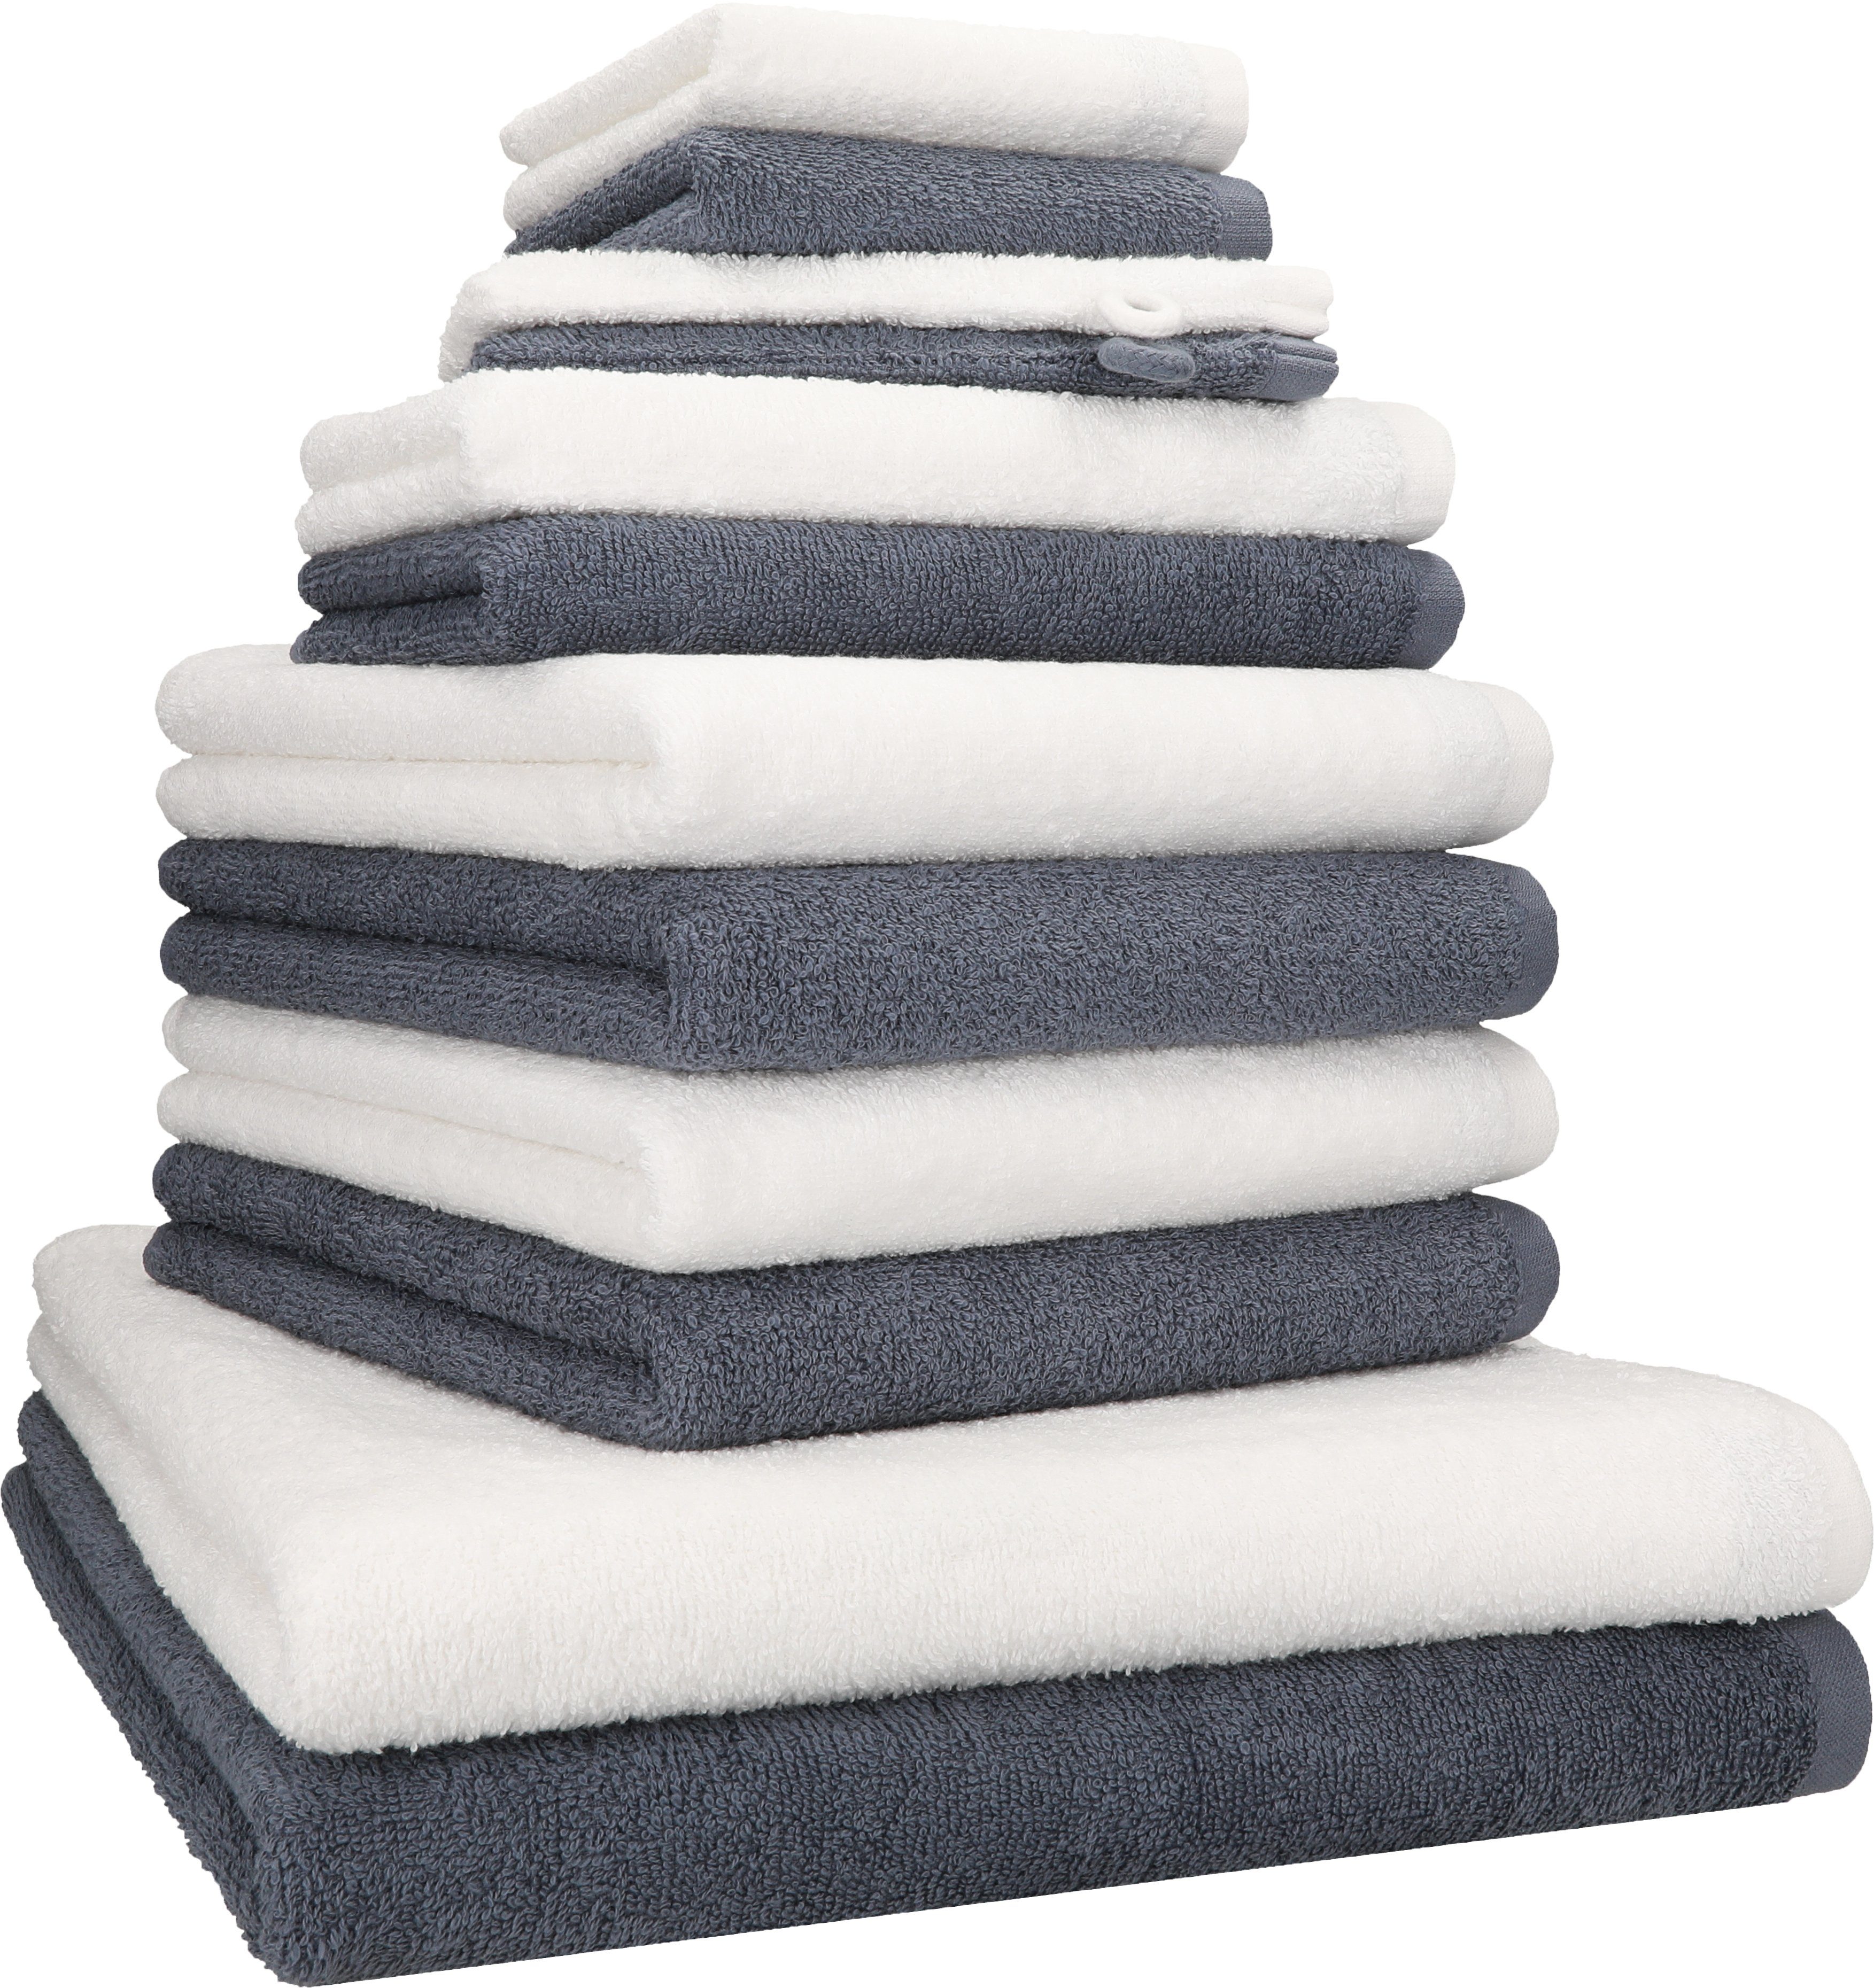 Betz Handtuch Set 12 TLG. Handtuch Set BERLIN Farbe dunkelgrau - weiß, 100% Baumwolle (12 Teile, 12-St)